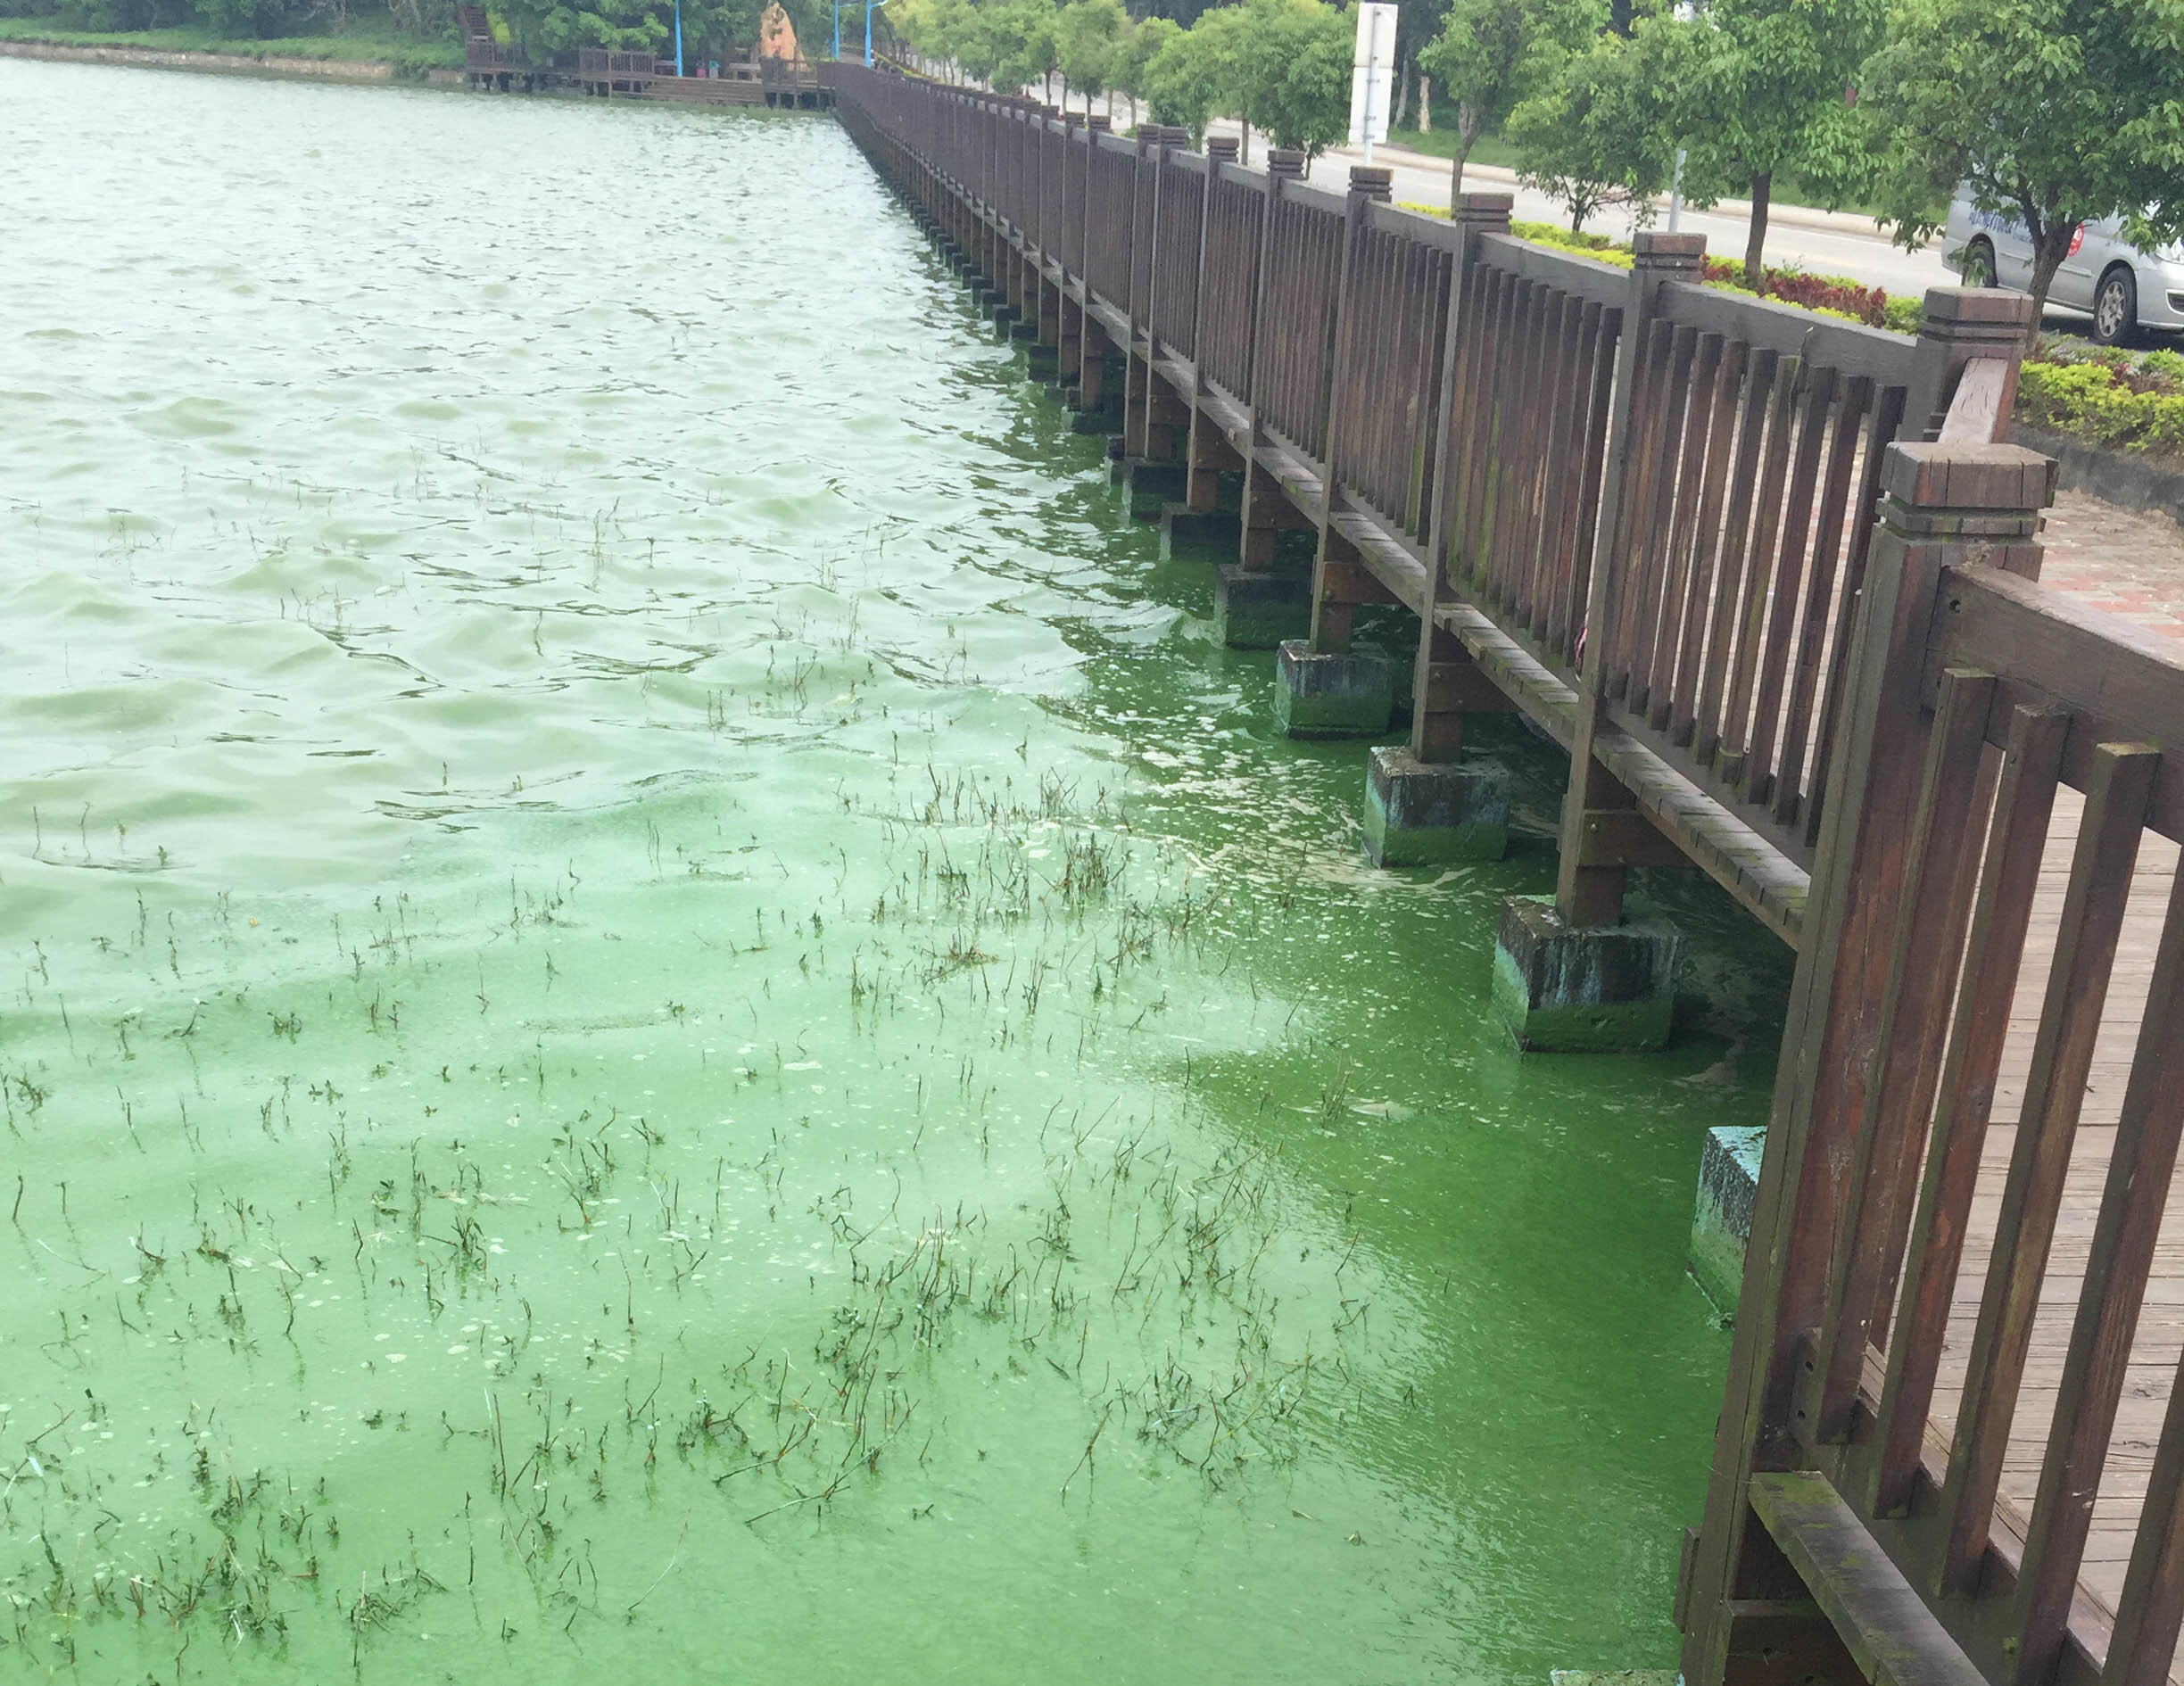 過氧化氫友善環境　優養化「藻」不到 | 華視新聞